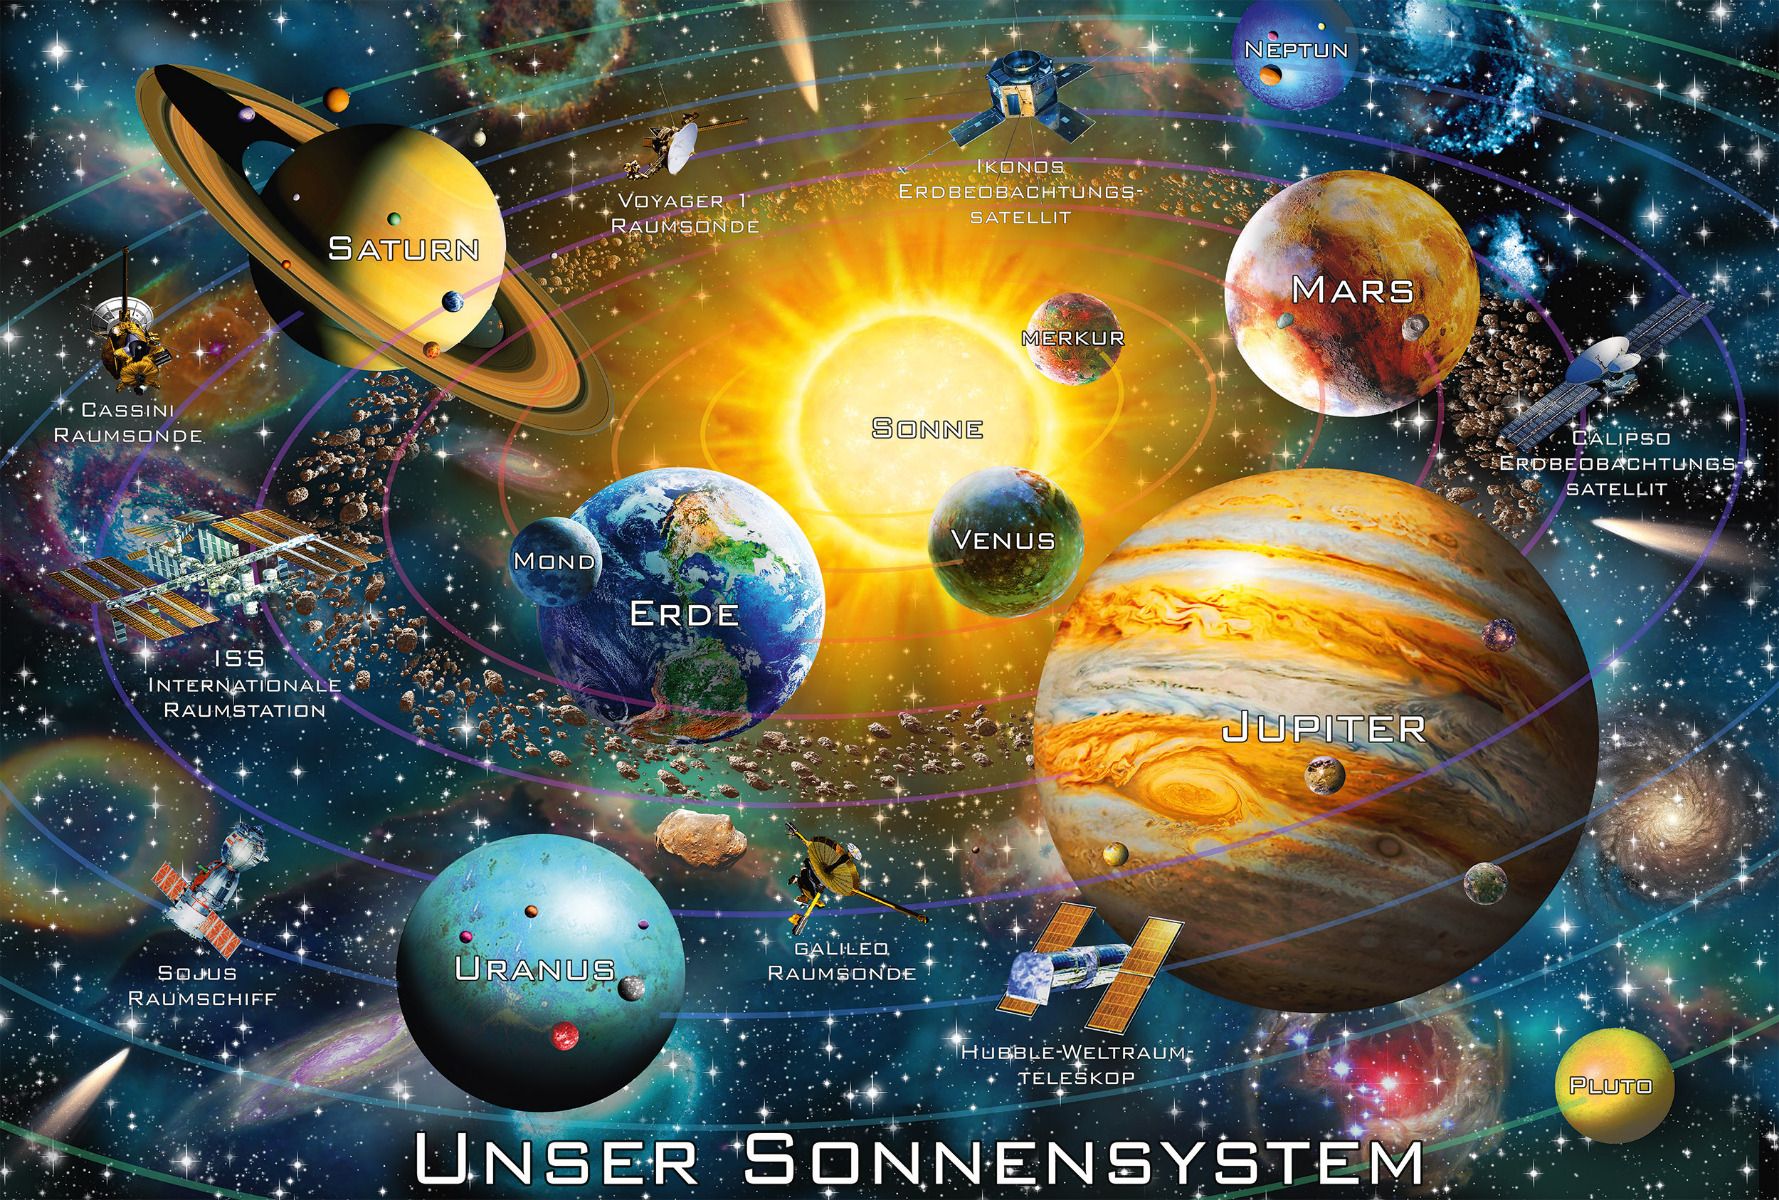 Unser Sonnensystem | Puzzle 200T